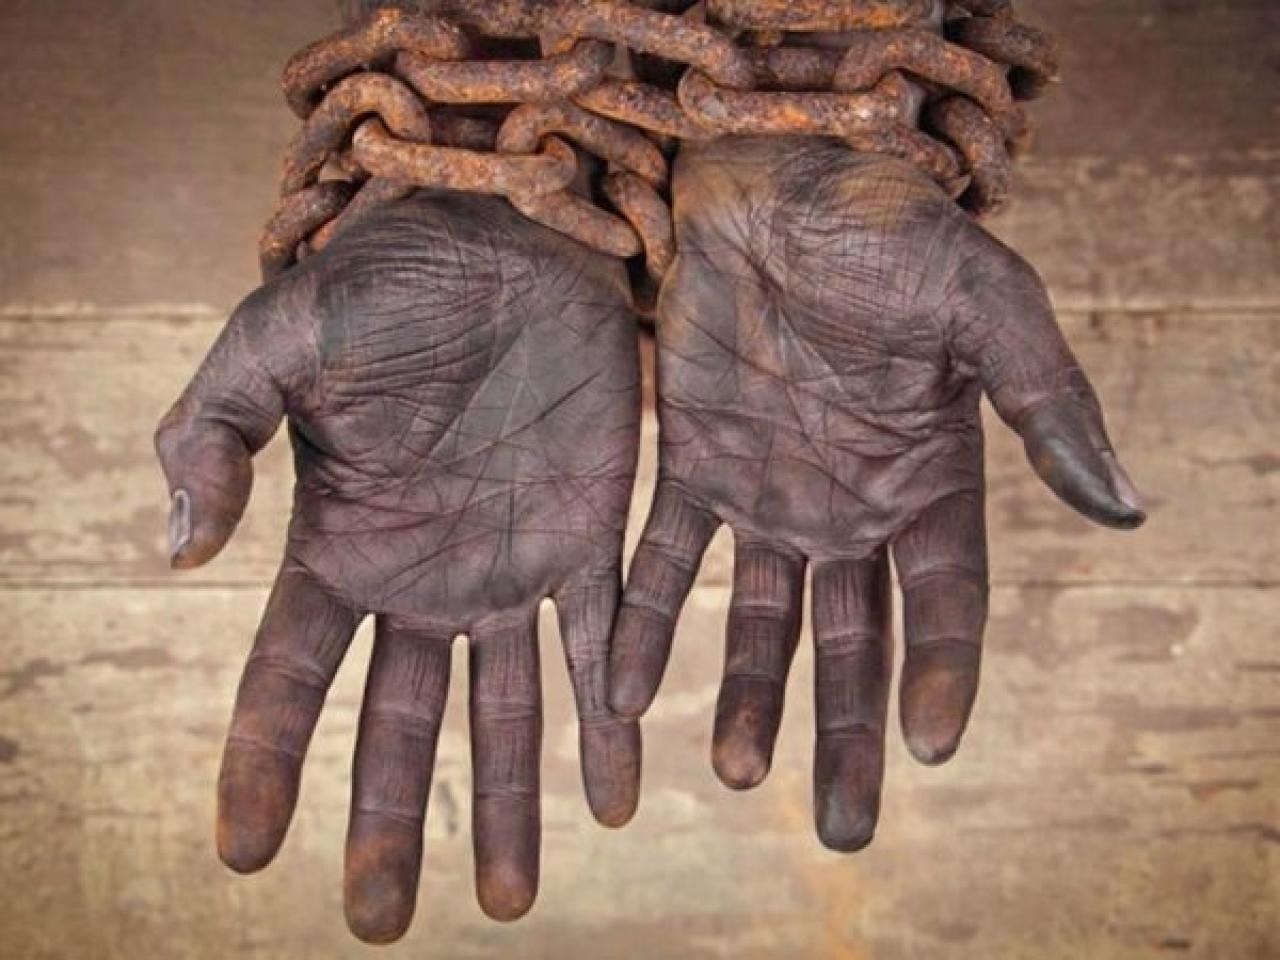 Ruke roba | Izvor: ontheblacklist.net - Je li kasno? Isprika jer su zaradili milijardu eura preko robova